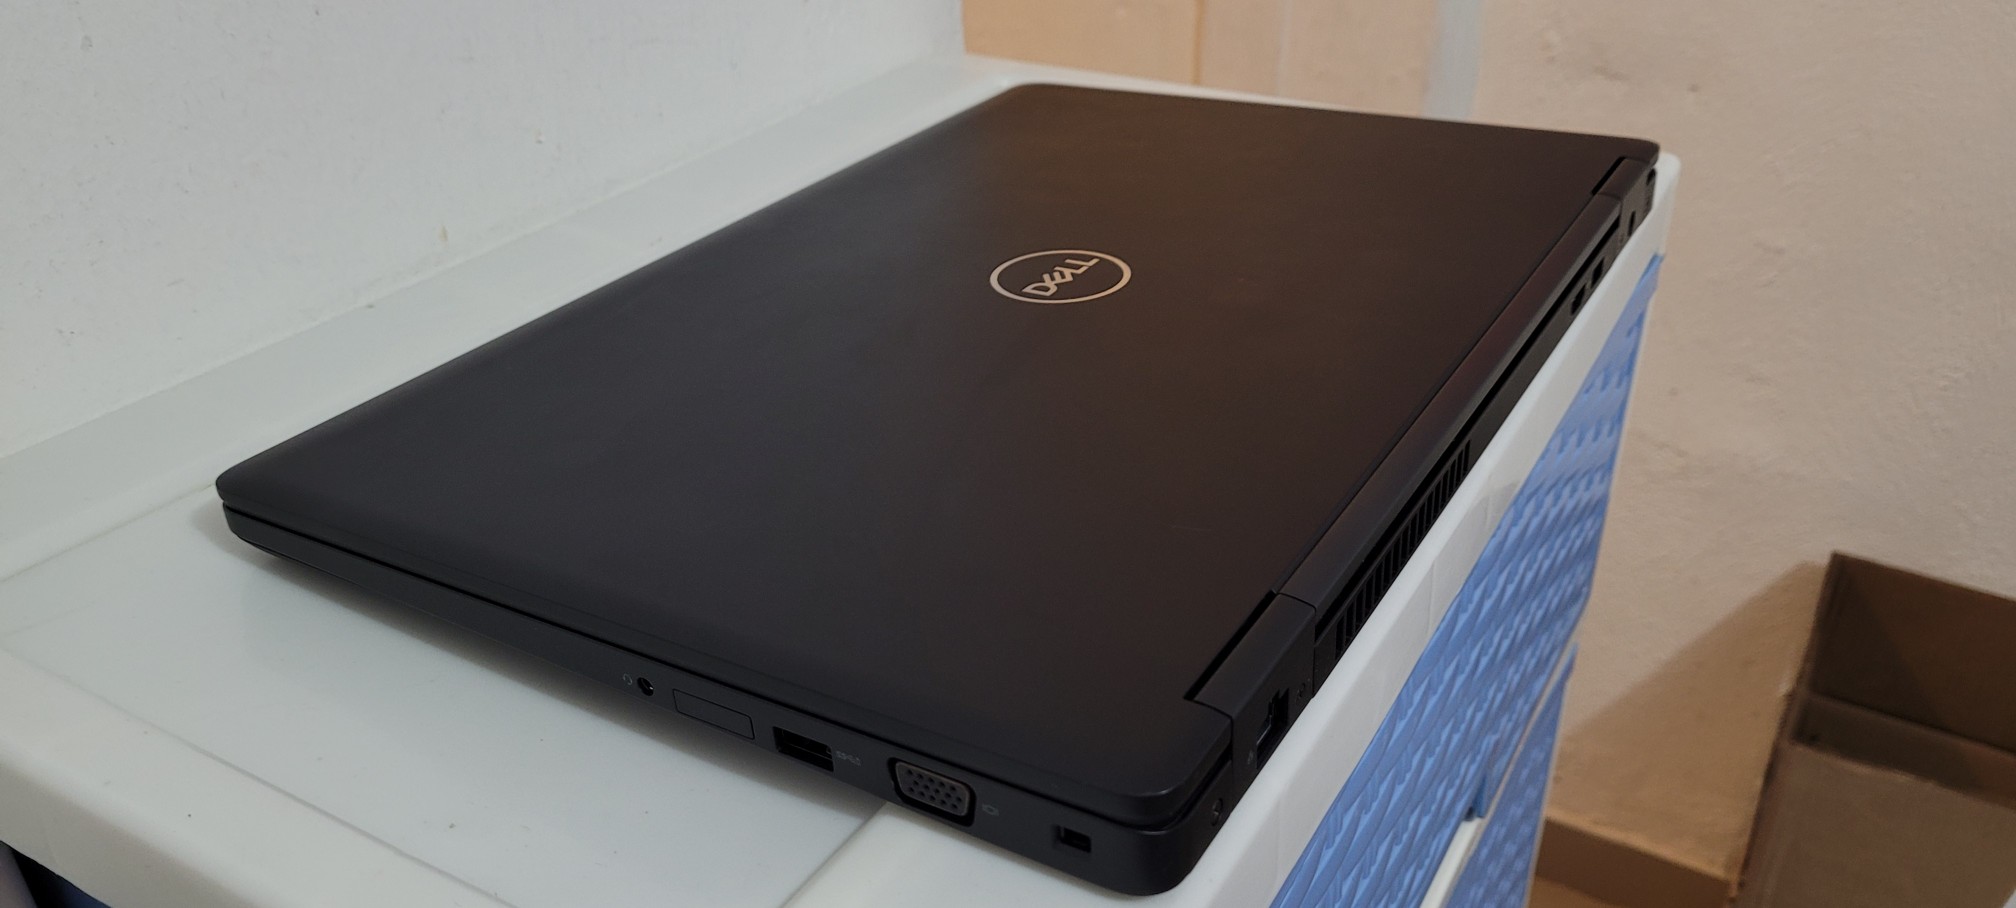 computadoras y laptops - Dell 5580 17 Pulg Core i5 8va Gen Ram 8gb Disco 128gb SSD Solido hdmi 2